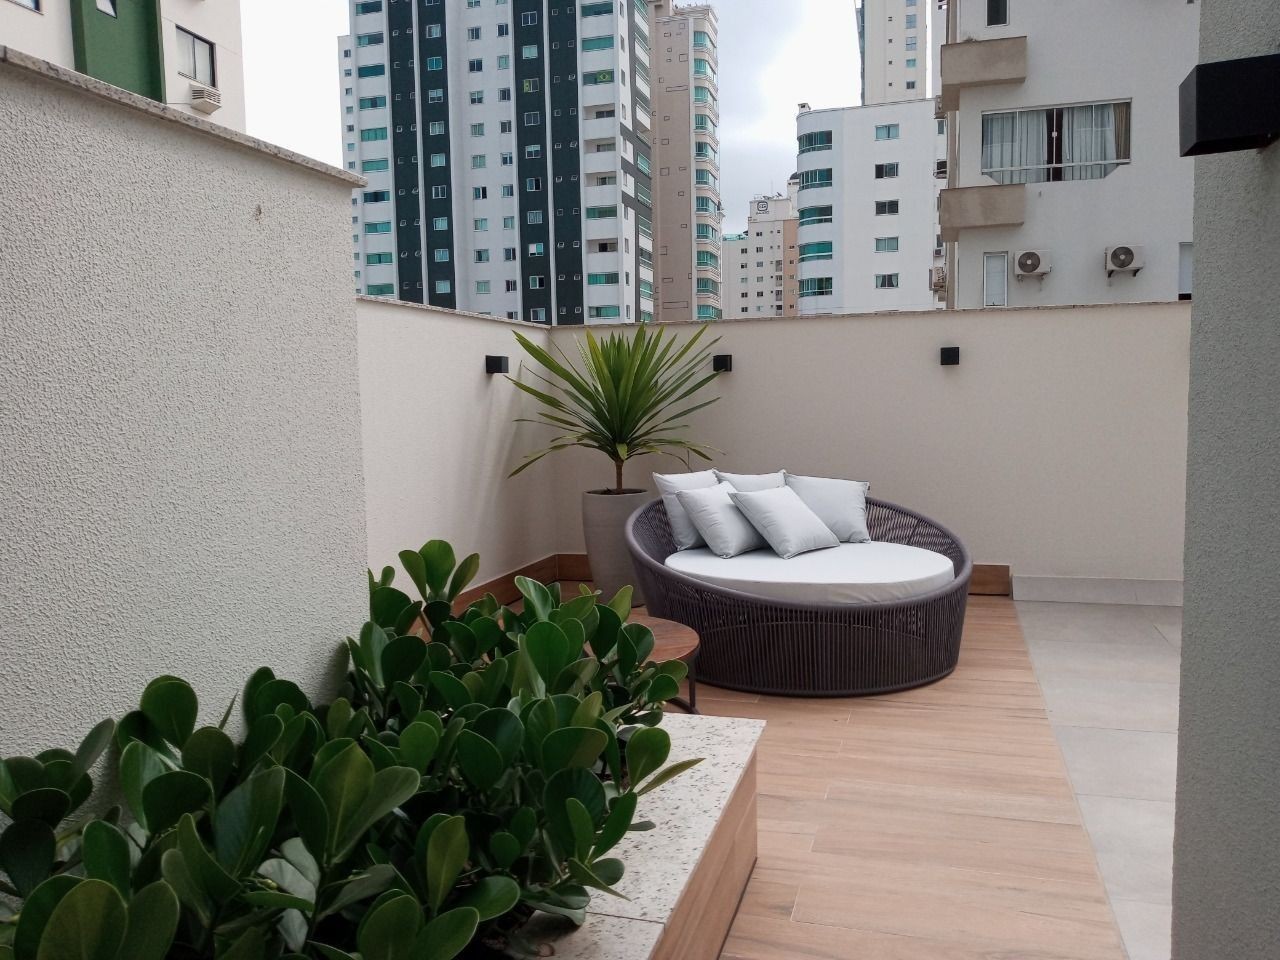 Apartamento Mobiliado e decorado em Balneário Camboriú-SC